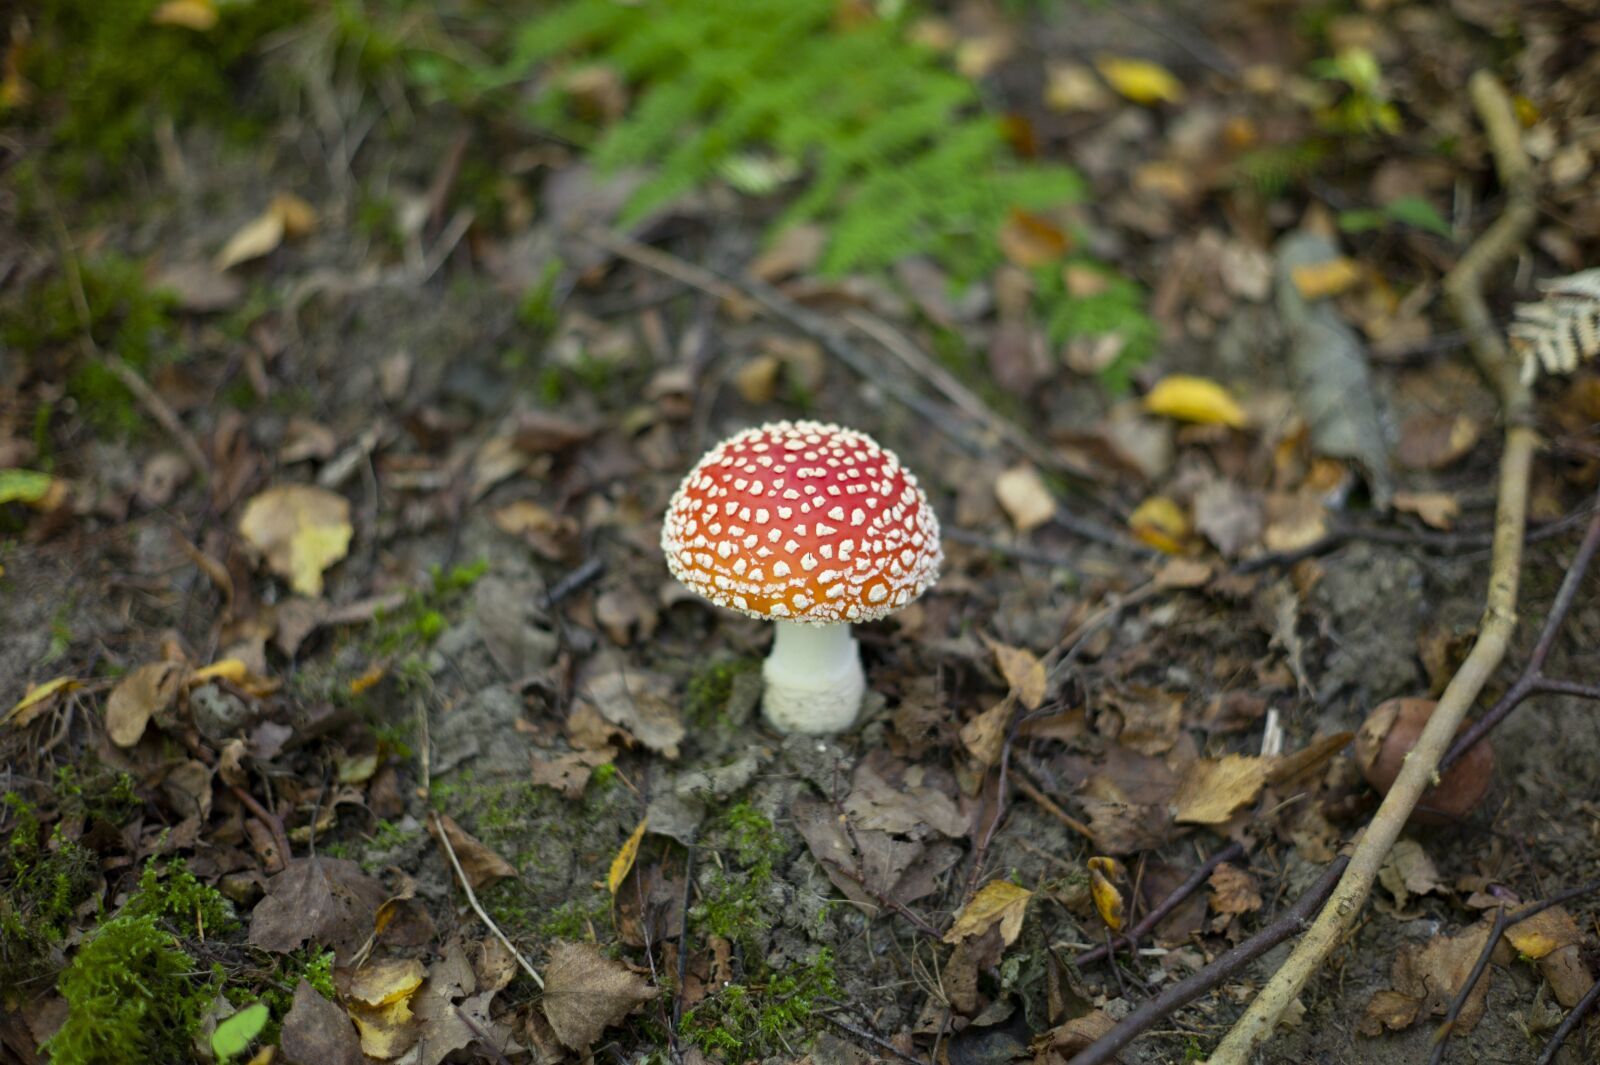 Leica M9 sample photo. Mushroom, fly agaric, autumn photography